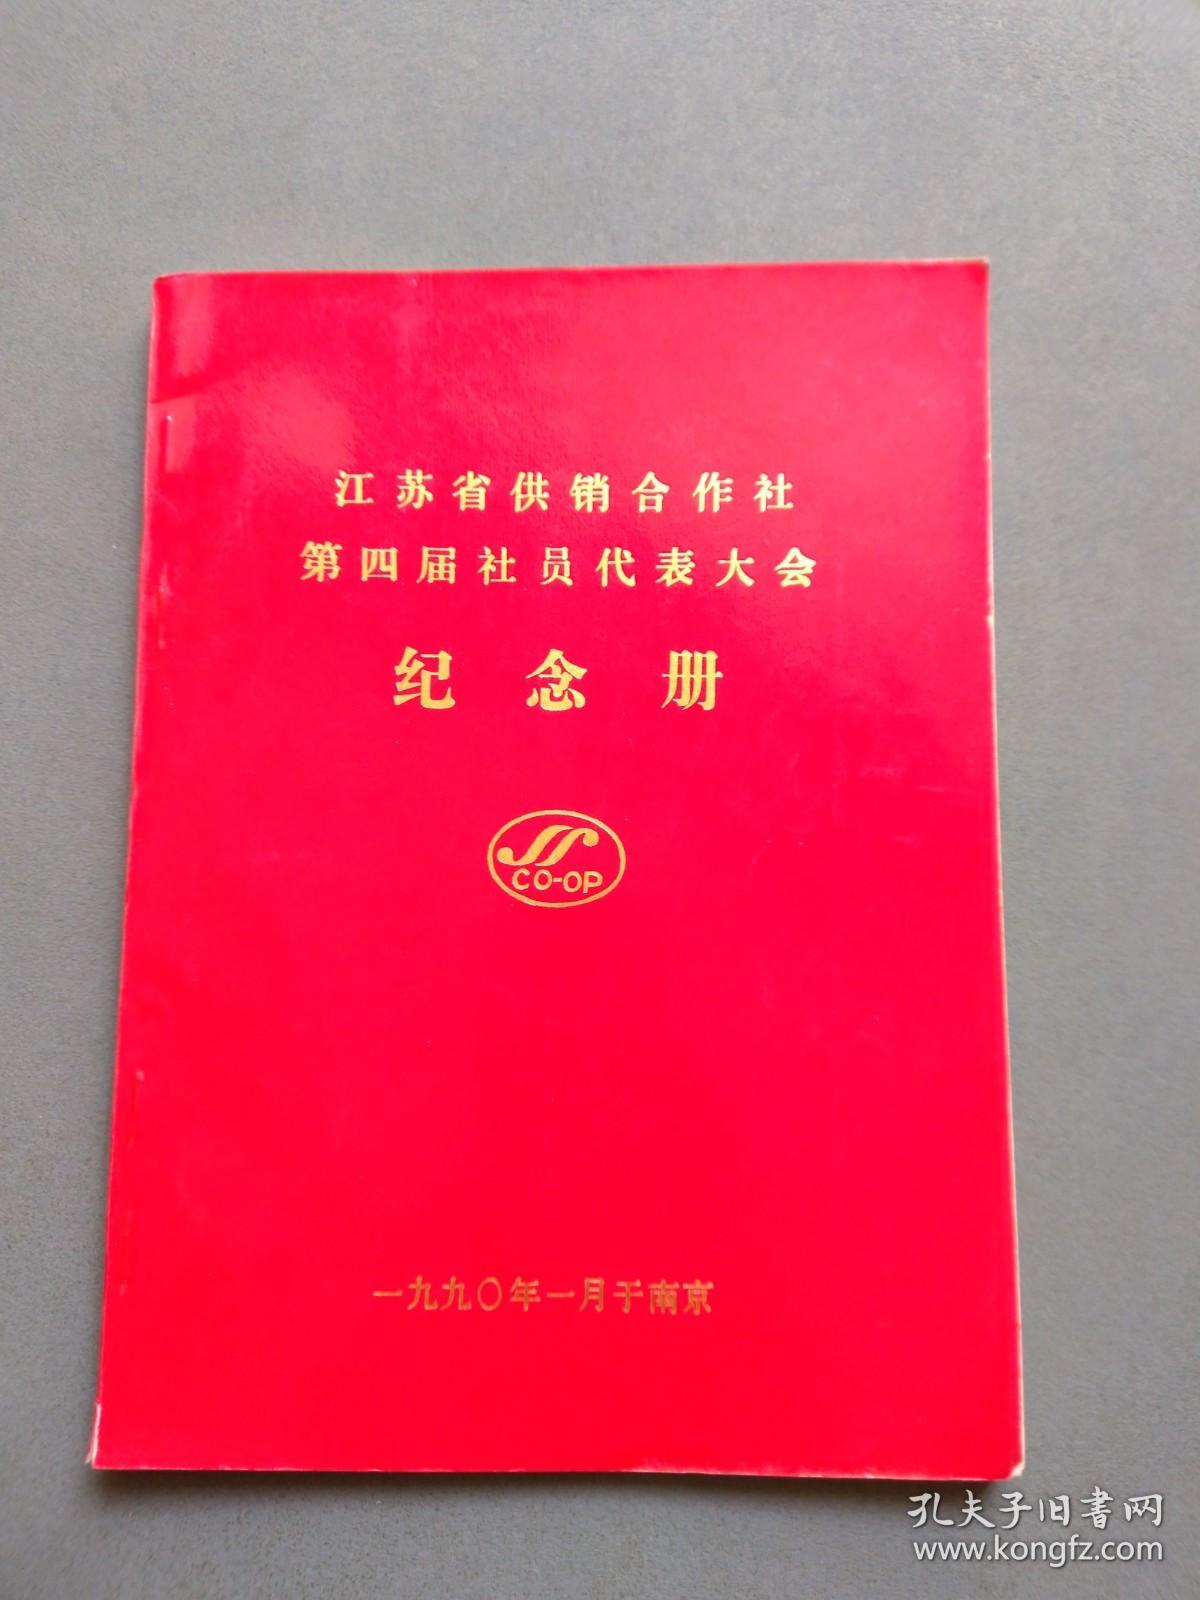 江苏省供销合作社第四届社员代表大会纪念册